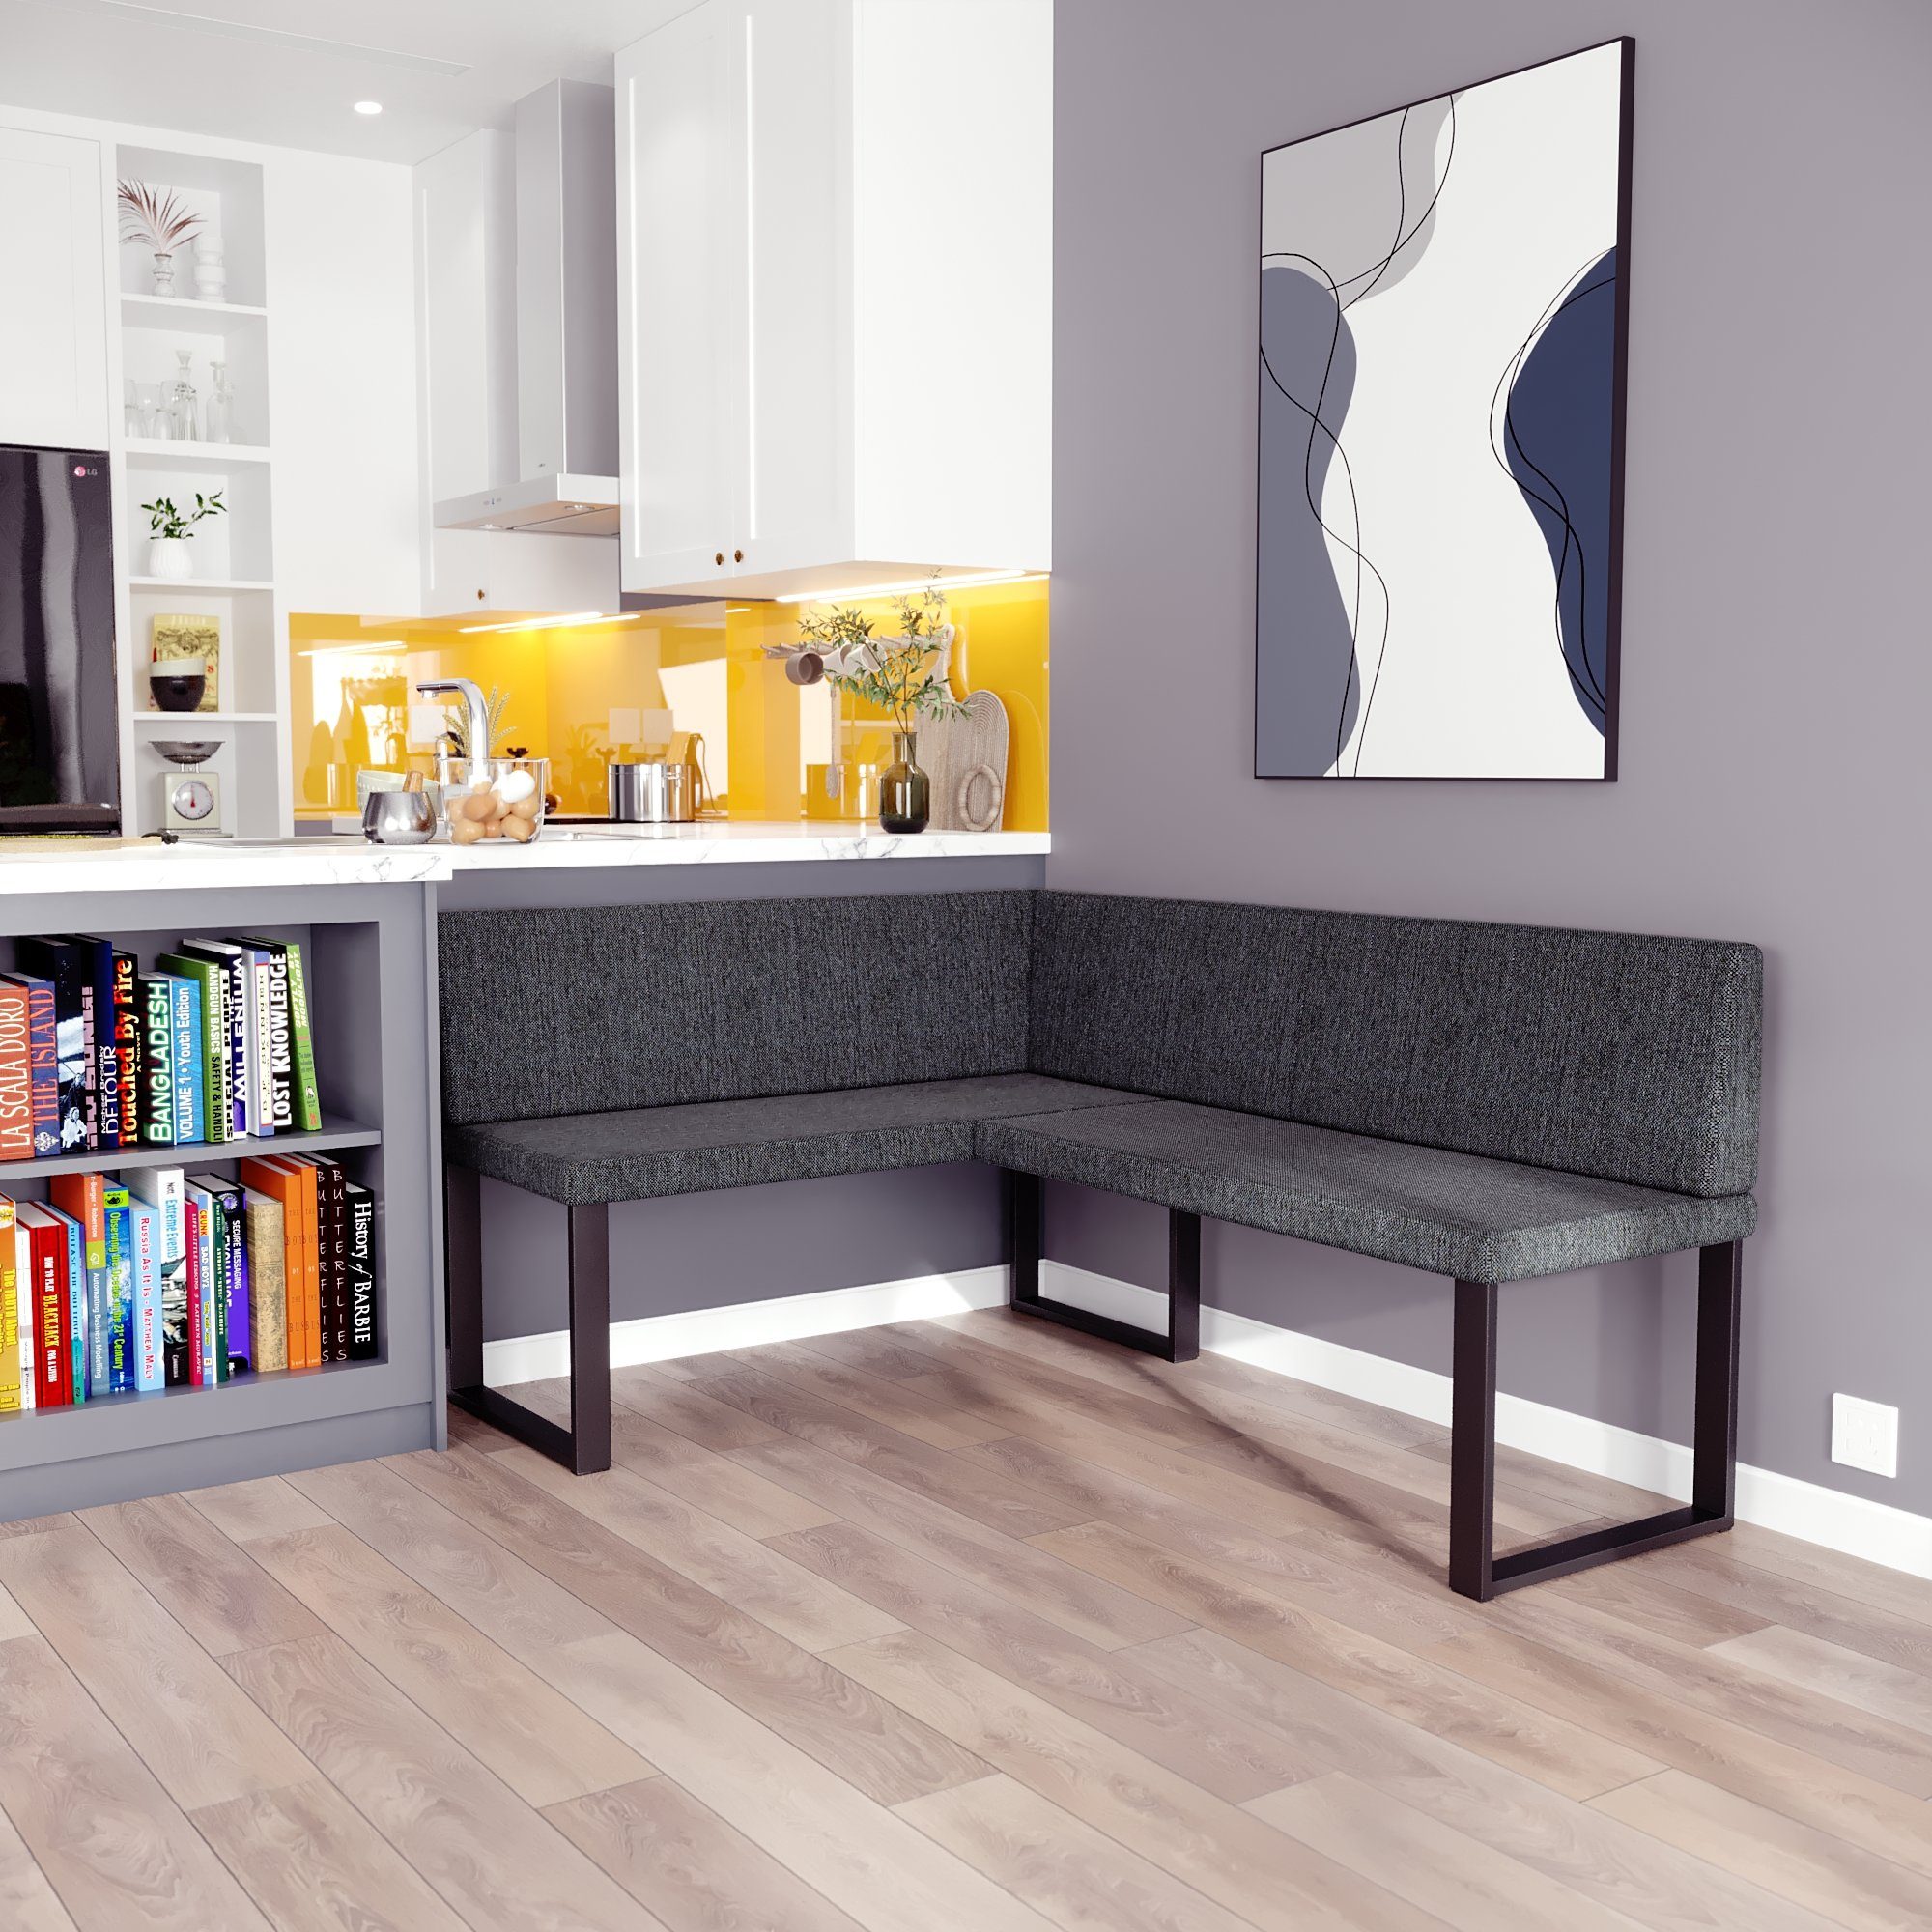 sofa4you Eckbank ALINA Metall, perfekt für Küche, Esszimmer, Wohnzimmer. Zwei Größen 128x168/142x196 grau